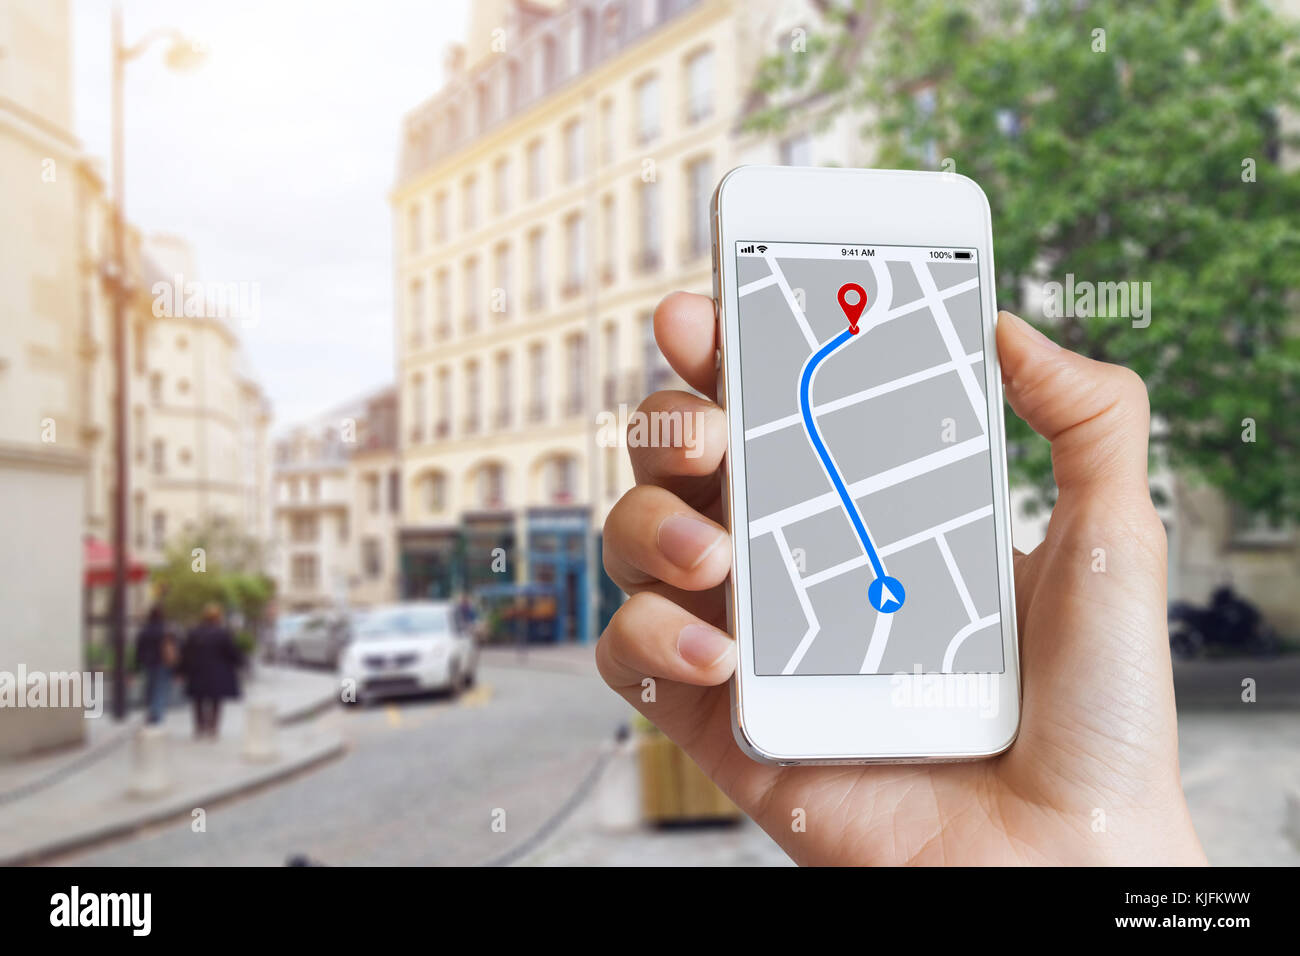 Tourist en utilisant la carte gps app de navigation sur smartphone écran pour obtenir direction pour adresse de destination dans les rues de la ville, les voyages et la technologie Banque D'Images